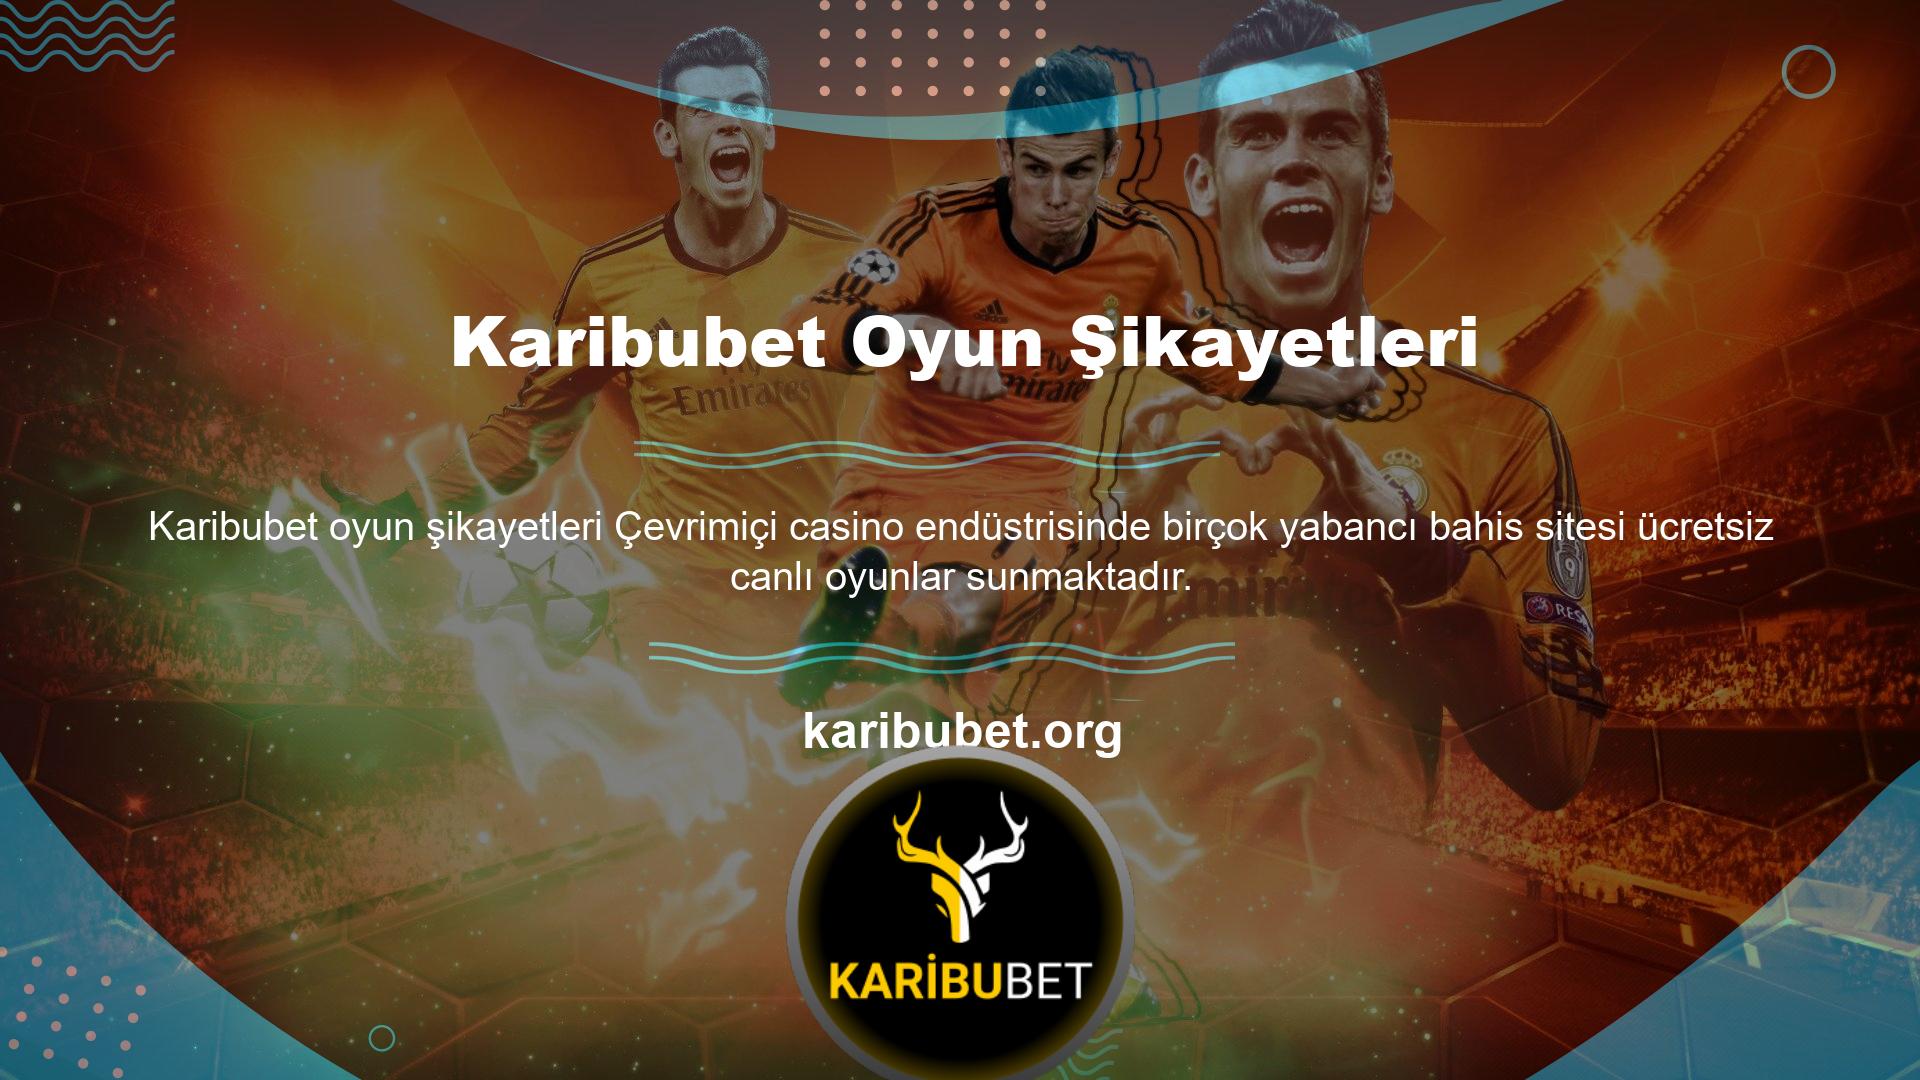 Karibubet TV sitesi, Türkiye'de ziyaret edebileceğiniz en güvenilir yabancı web sitelerinden biridir